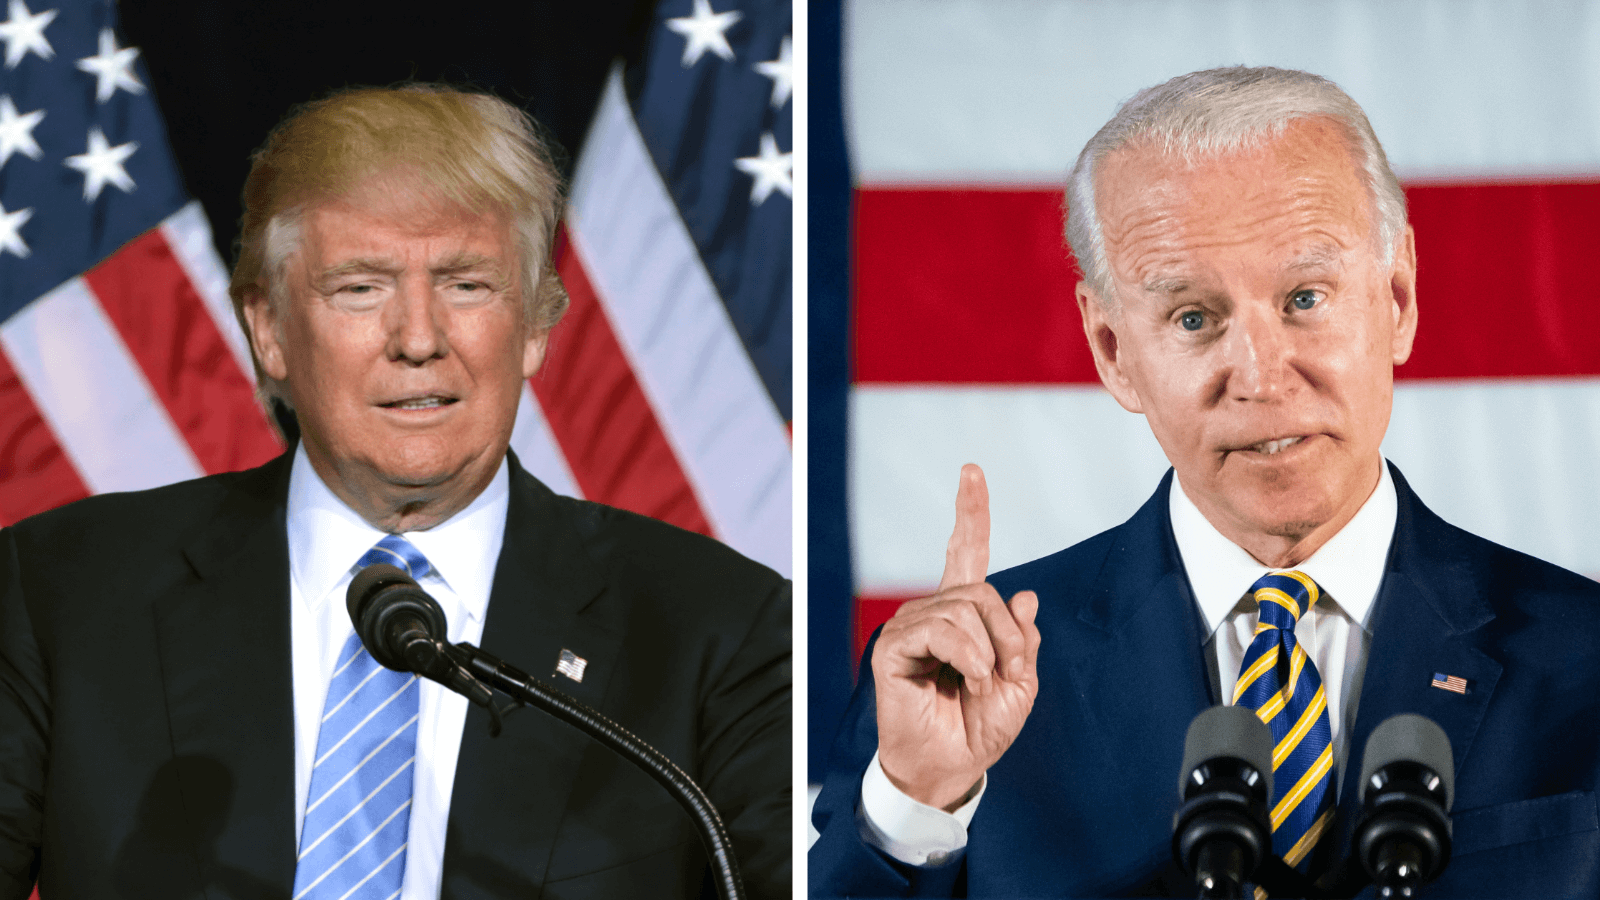 Donald Trump und Joe Biden treffen am 22. Oktober zum letzten TV-Duell vor der Wahl aufeinander.